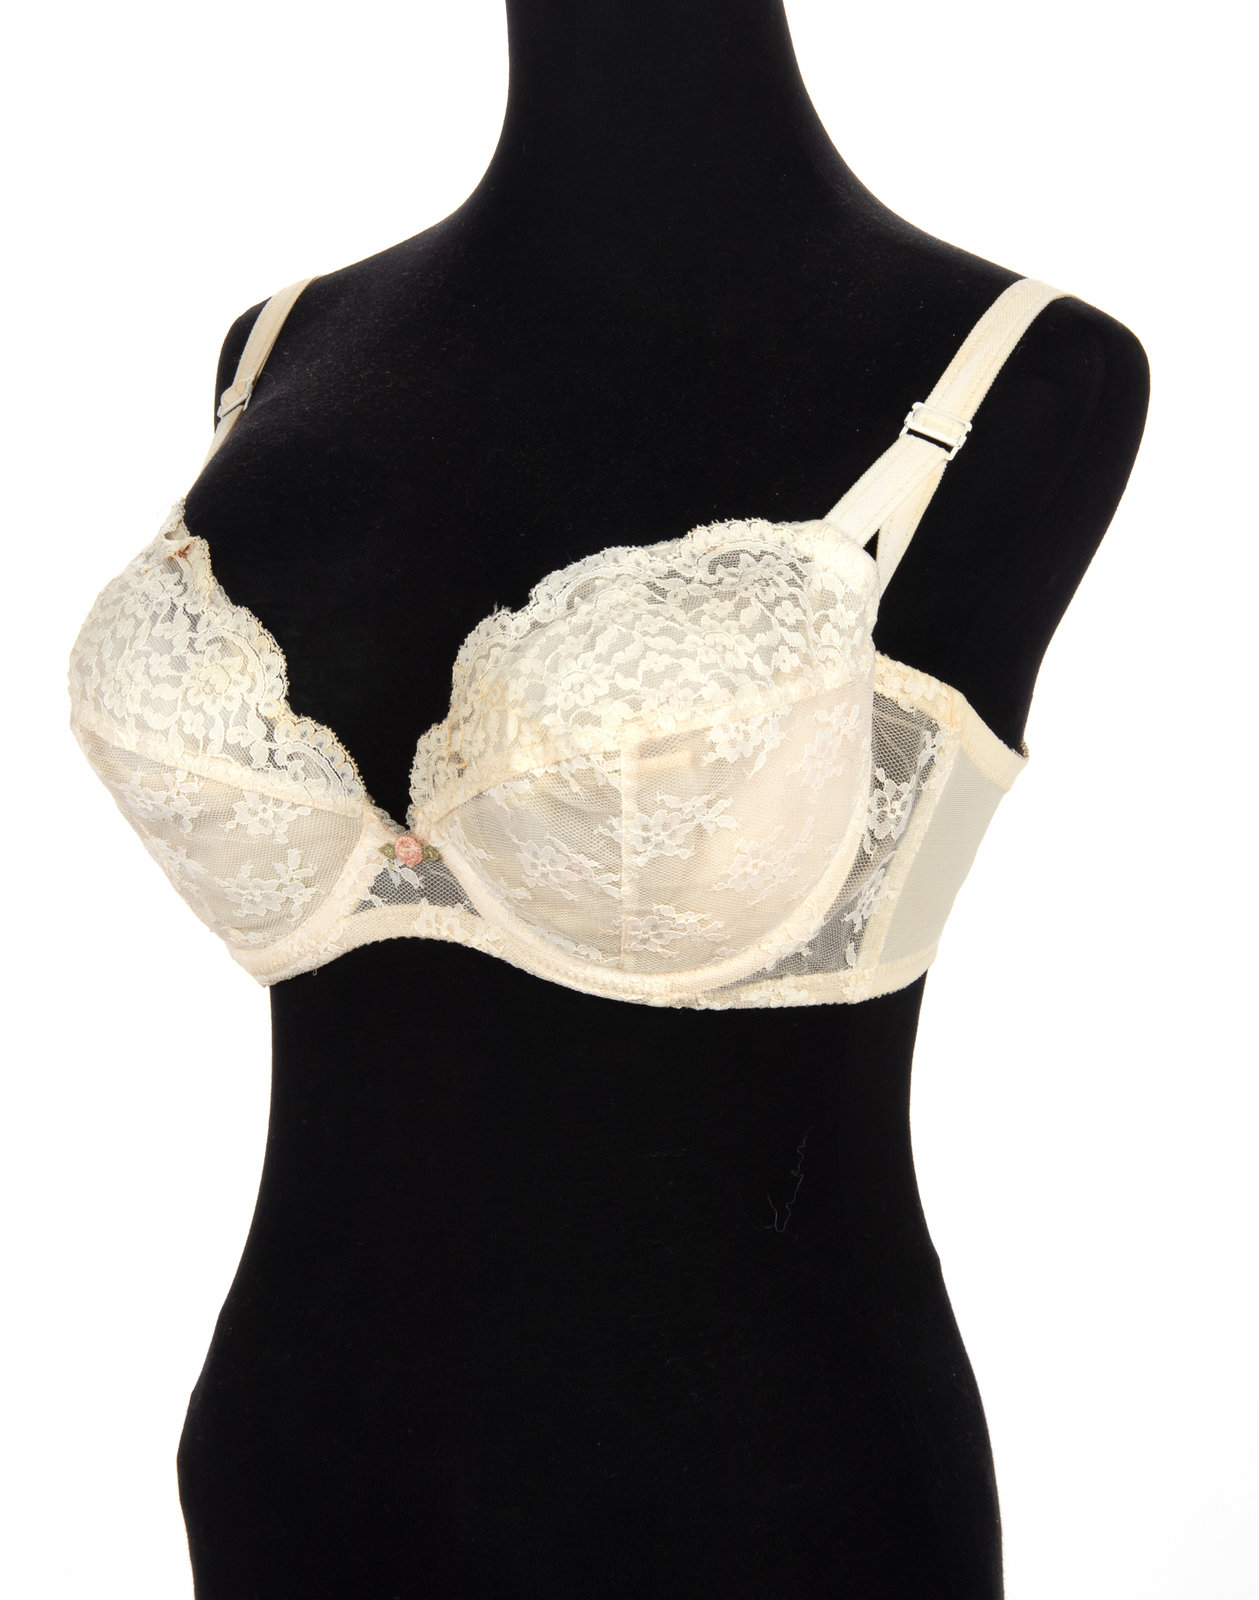 Sold at Auction: New Victoria's Secret Bra Size 38D